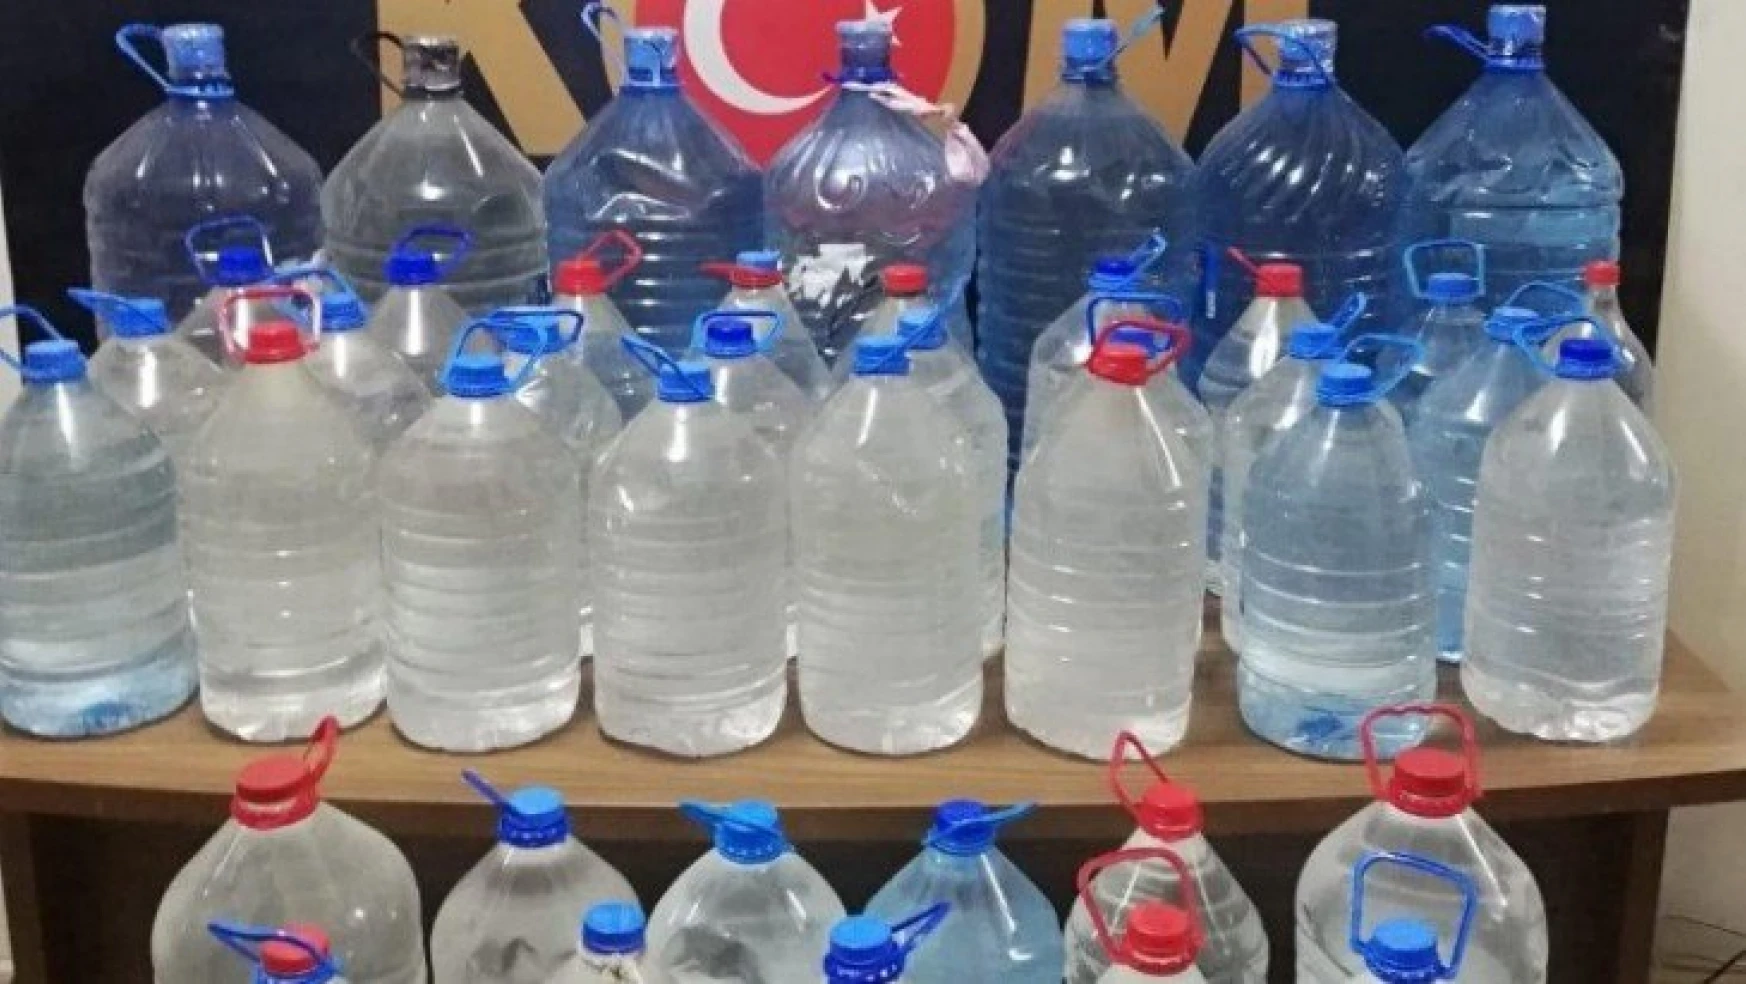 Malatya'da 321 litre boğma içki ele geçirildi